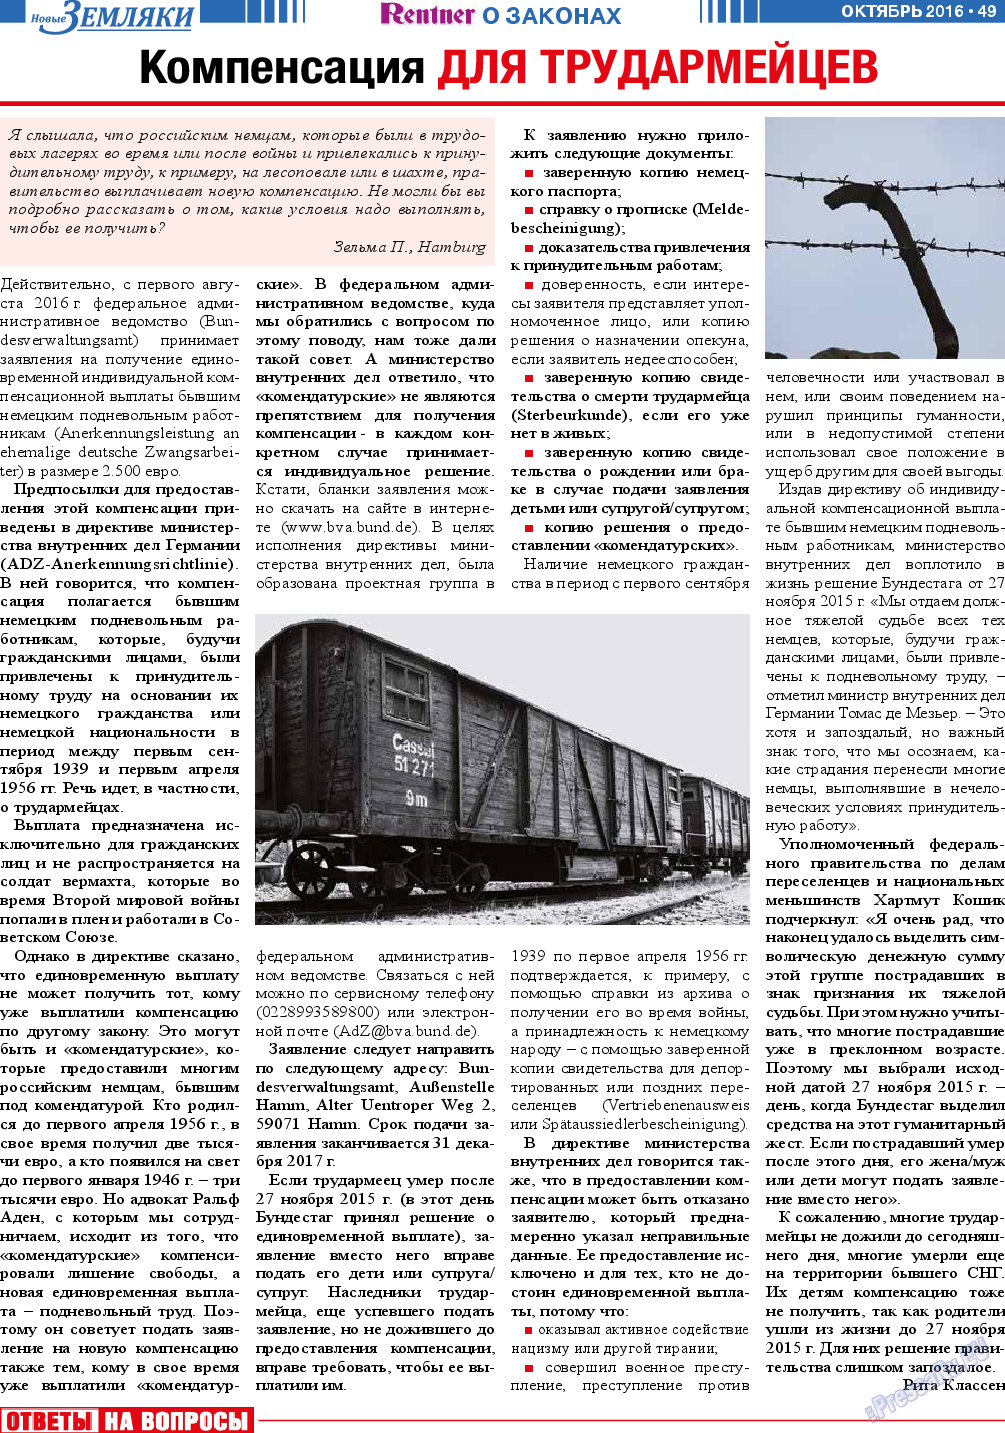 Новые Земляки, газета. 2016 №10 стр.49